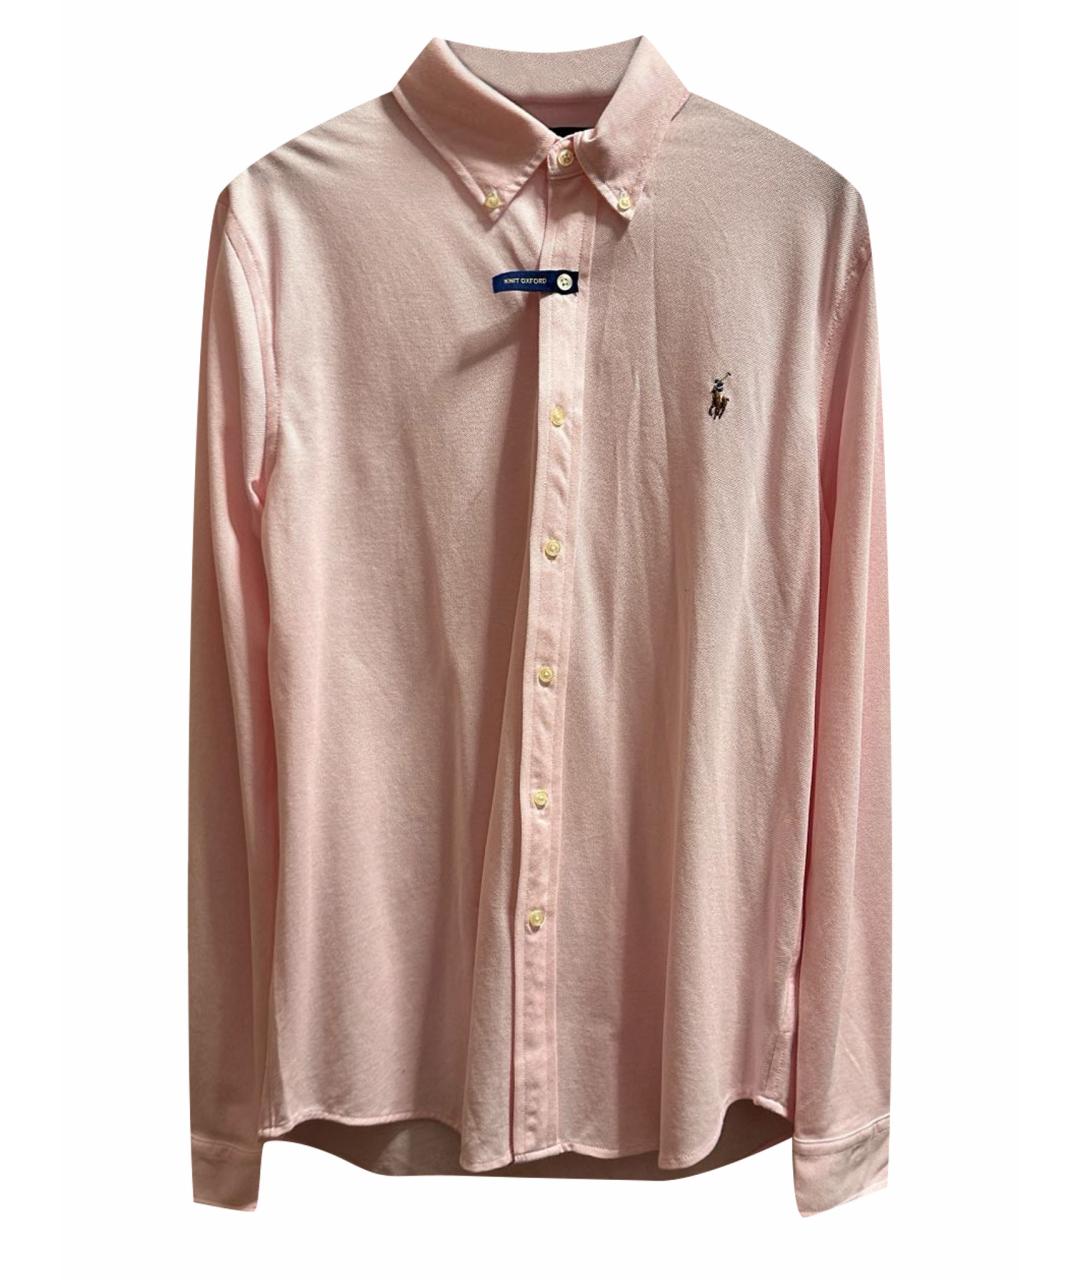 POLO RALPH LAUREN Розовая хлопковая классическая рубашка, фото 1